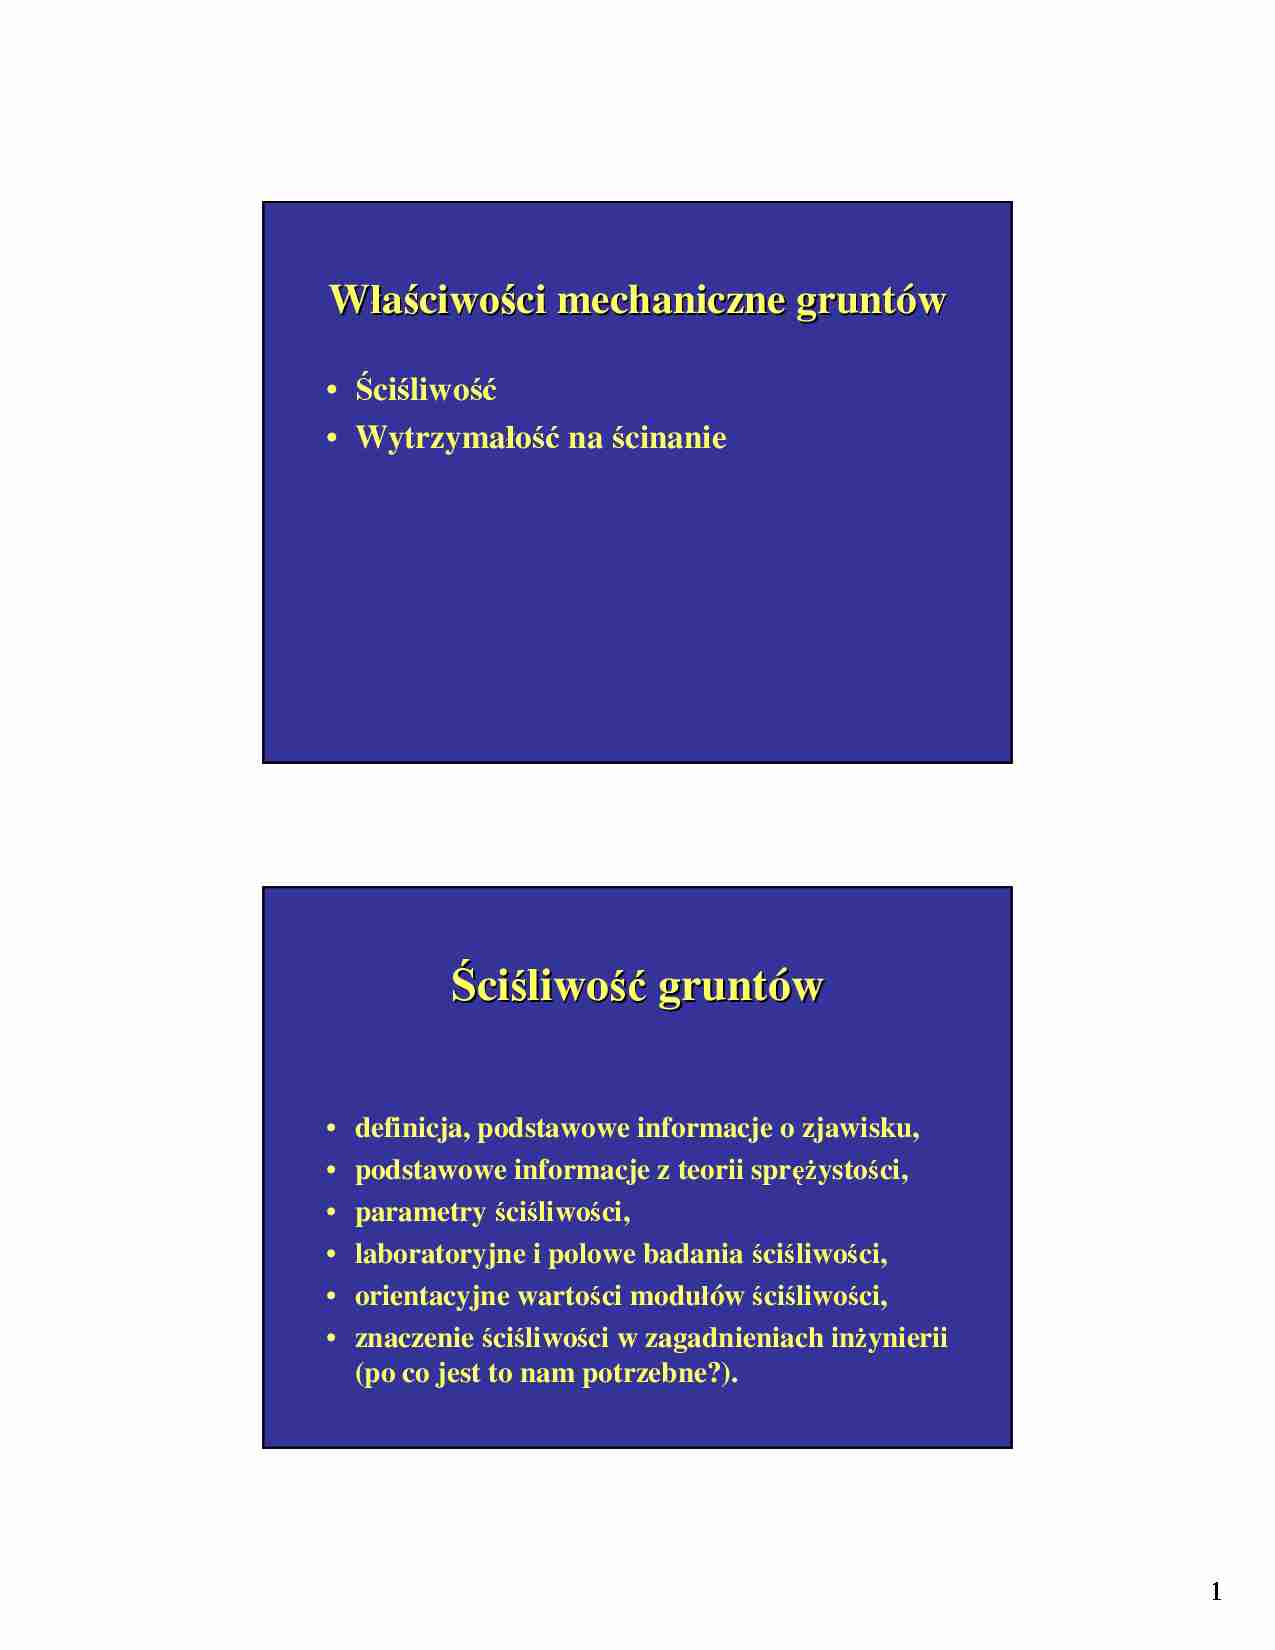 Mechanika gruntów - Wykład 3: Właściwości mechaniczne gruntów - strona 1